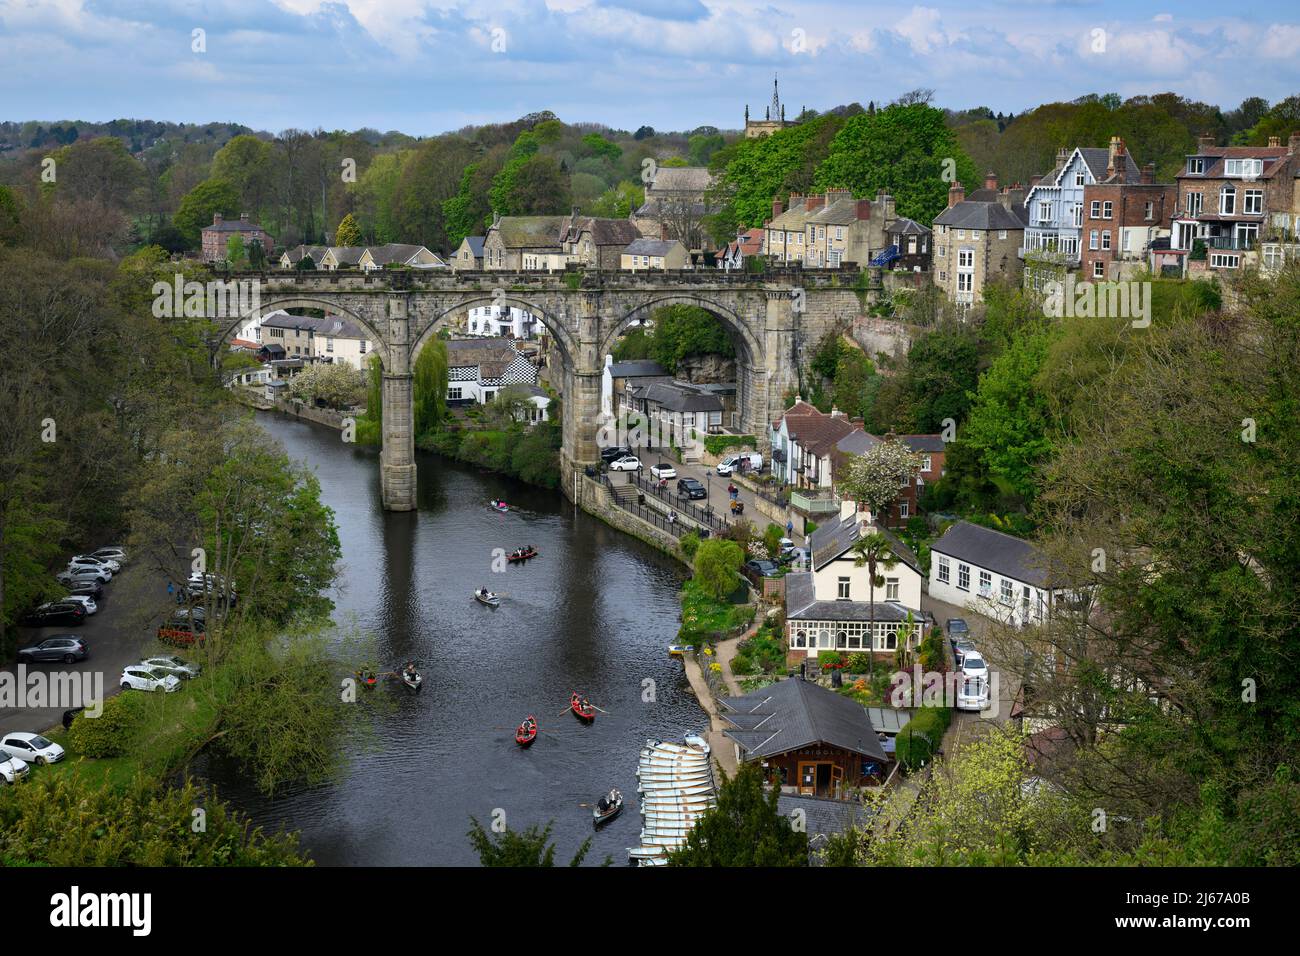 Paisaje escénico de Knaresborough & River Nidd (viaducto histórico que abarca el desfiladero, las casas de la orilla del río y de la ladera, los barcos en el agua) - Yorkshire, Inglaterra, Reino Unido. Foto de stock